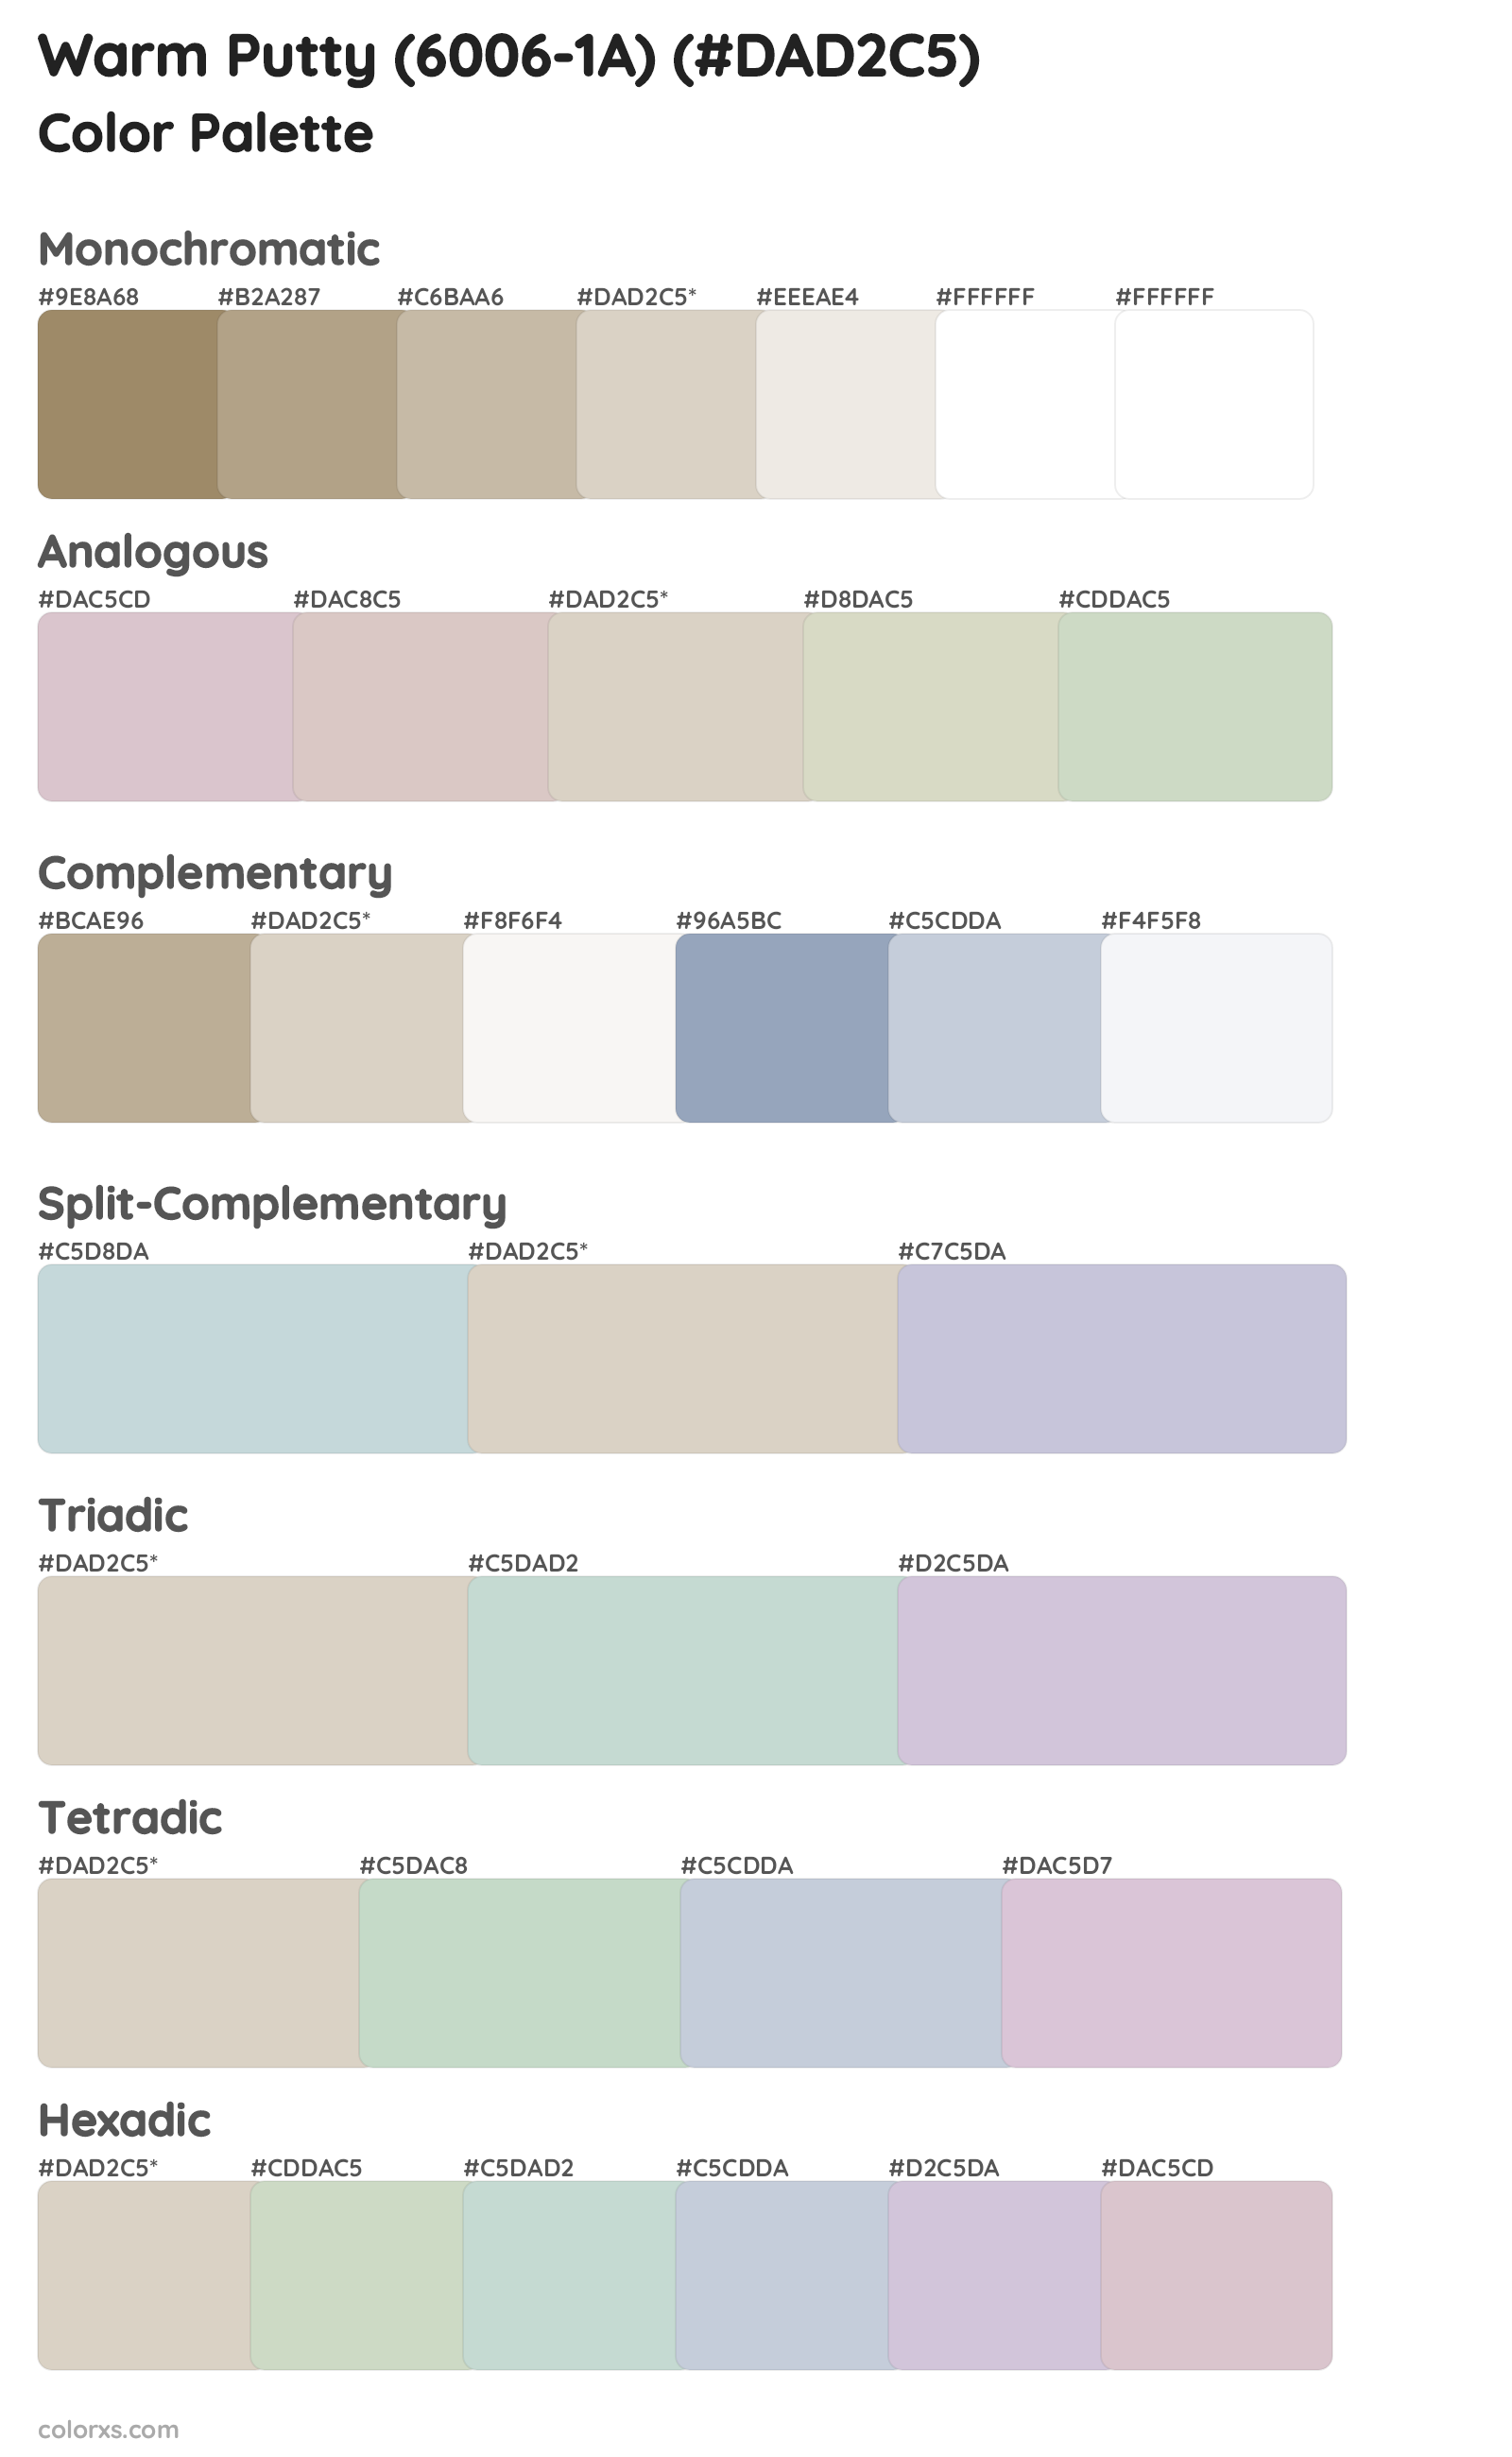 Warm Putty (6006-1A) Color Scheme Palettes